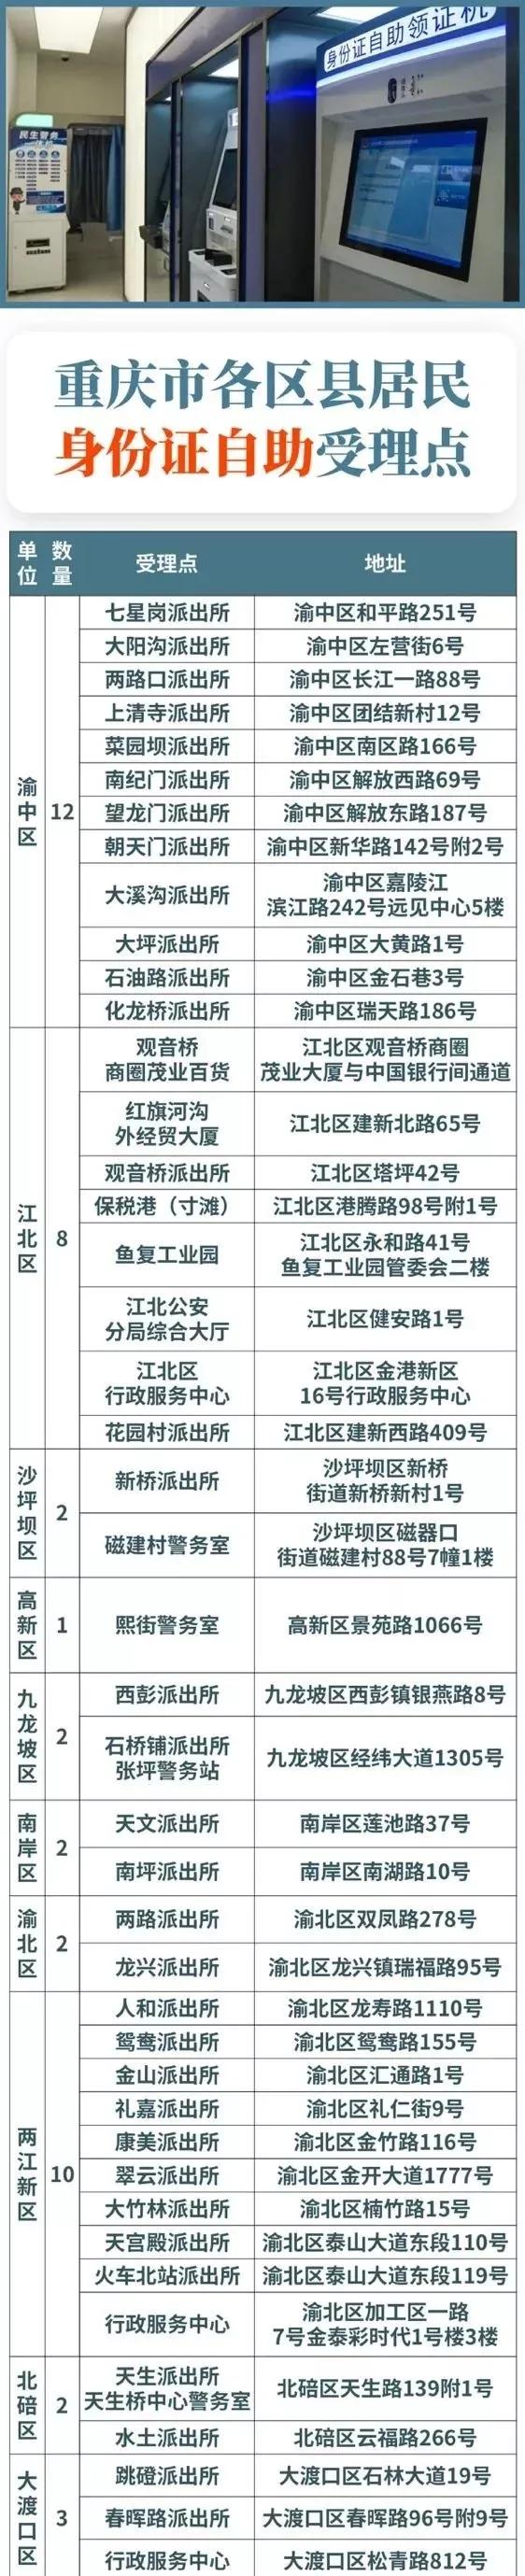 重庆推出24小时身份证补办自助一体机